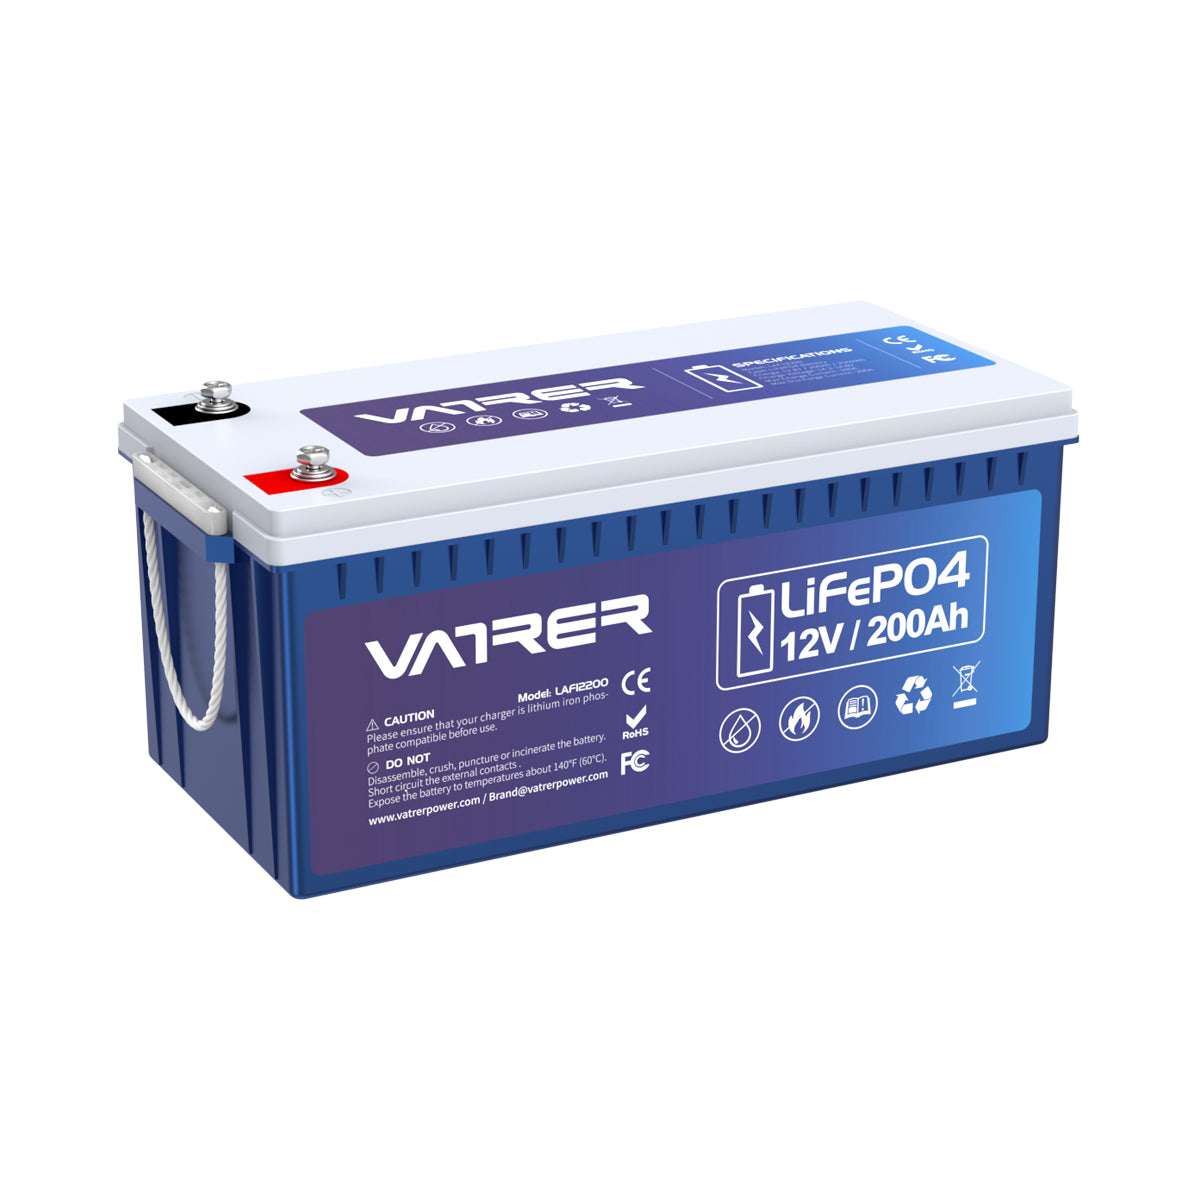 Batterie au lithium LiTime 12V 200Ah LiFePO4 – LiTime-DE